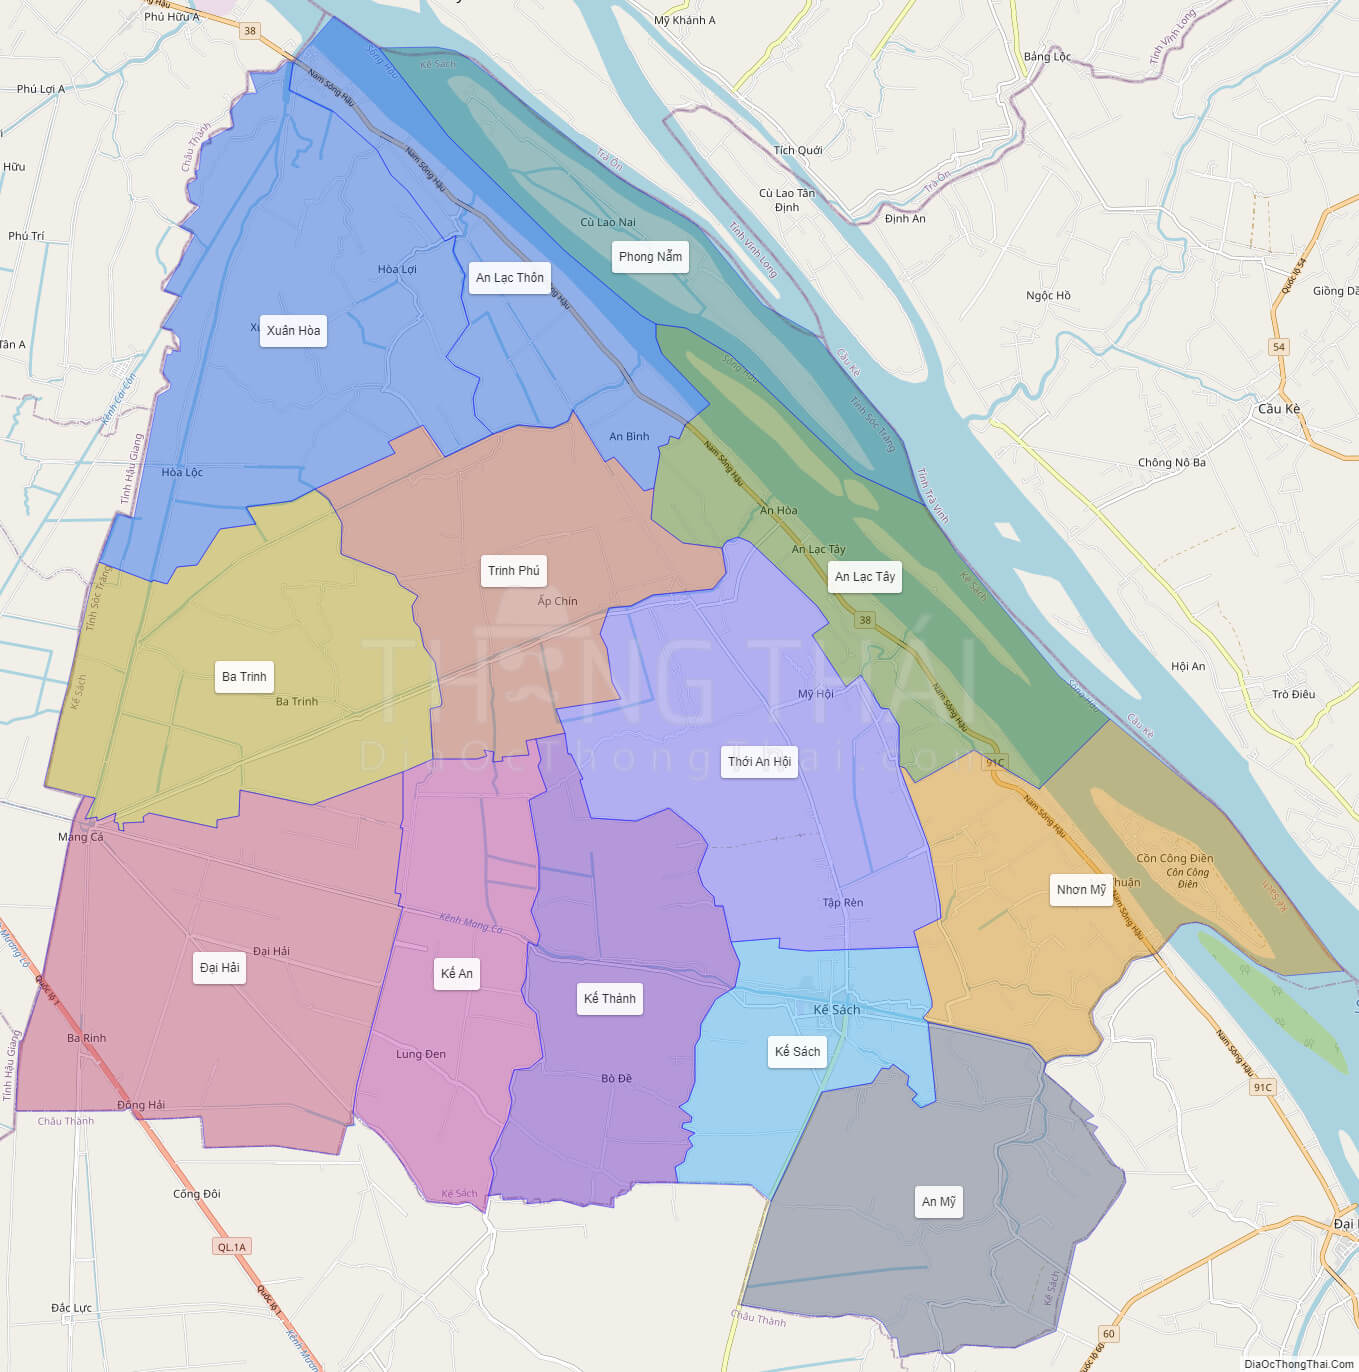 Bản đồ huyện Kế Sách:
Kế Sách là một huyện nằm ở vùng đồng bằng sông Cửu Long, nơi có nhiều tiềm năng để phát triển nông nghiệp và du lịch. Với bản đồ huyện mới, cộng đồng sẽ có nhiều cơ hội để phát triển kinh tế và cải thiện đời sống.